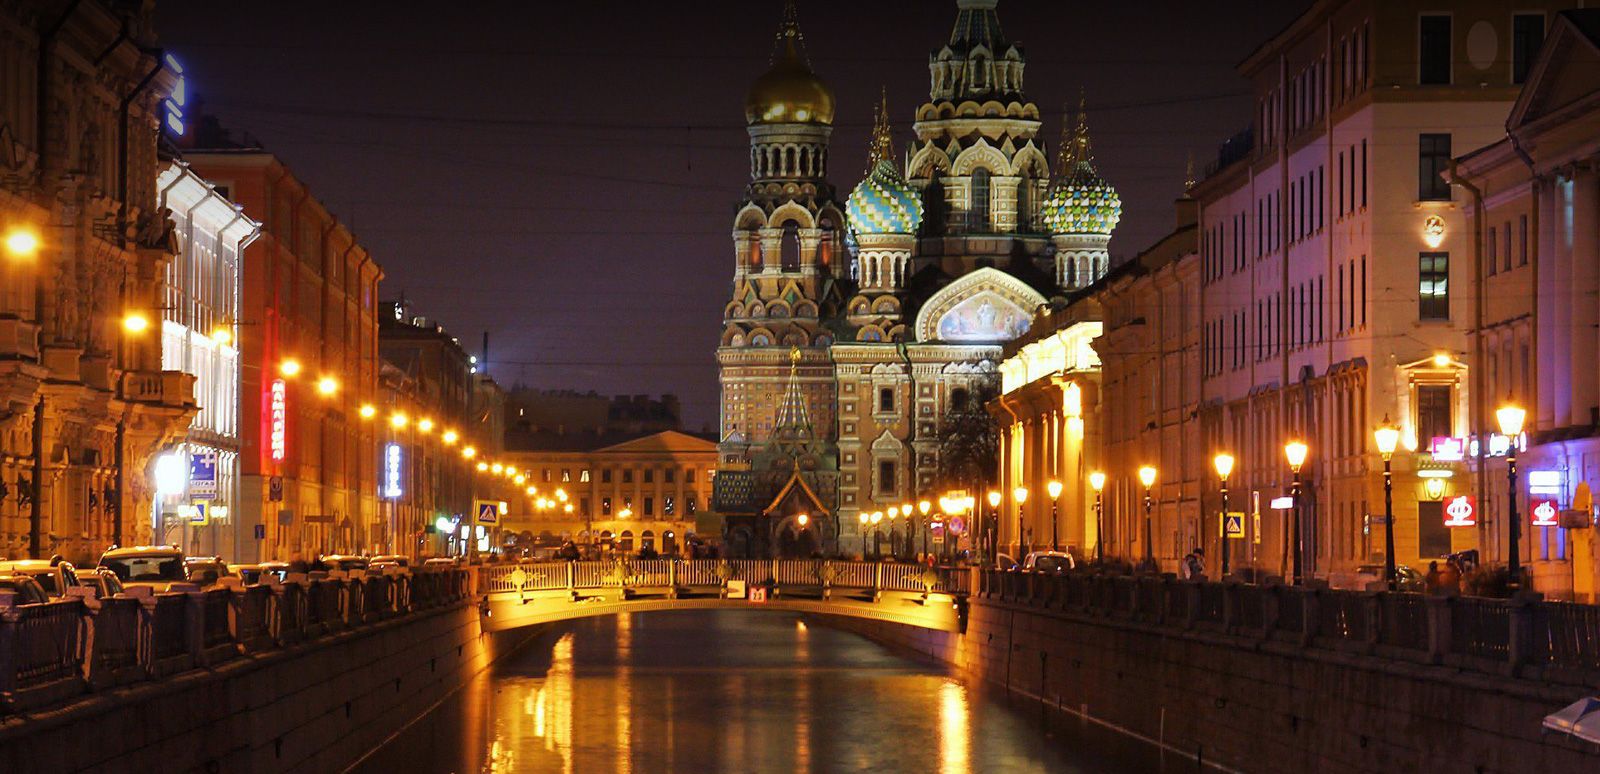 ทัวร์รัสเซีย - ทัวร์รัสเซีย เข้ามอสโค ออกเซ็นด์ปีเตอร์เบริก์ ชมโชว์เซอร์คัสรัสเซีย